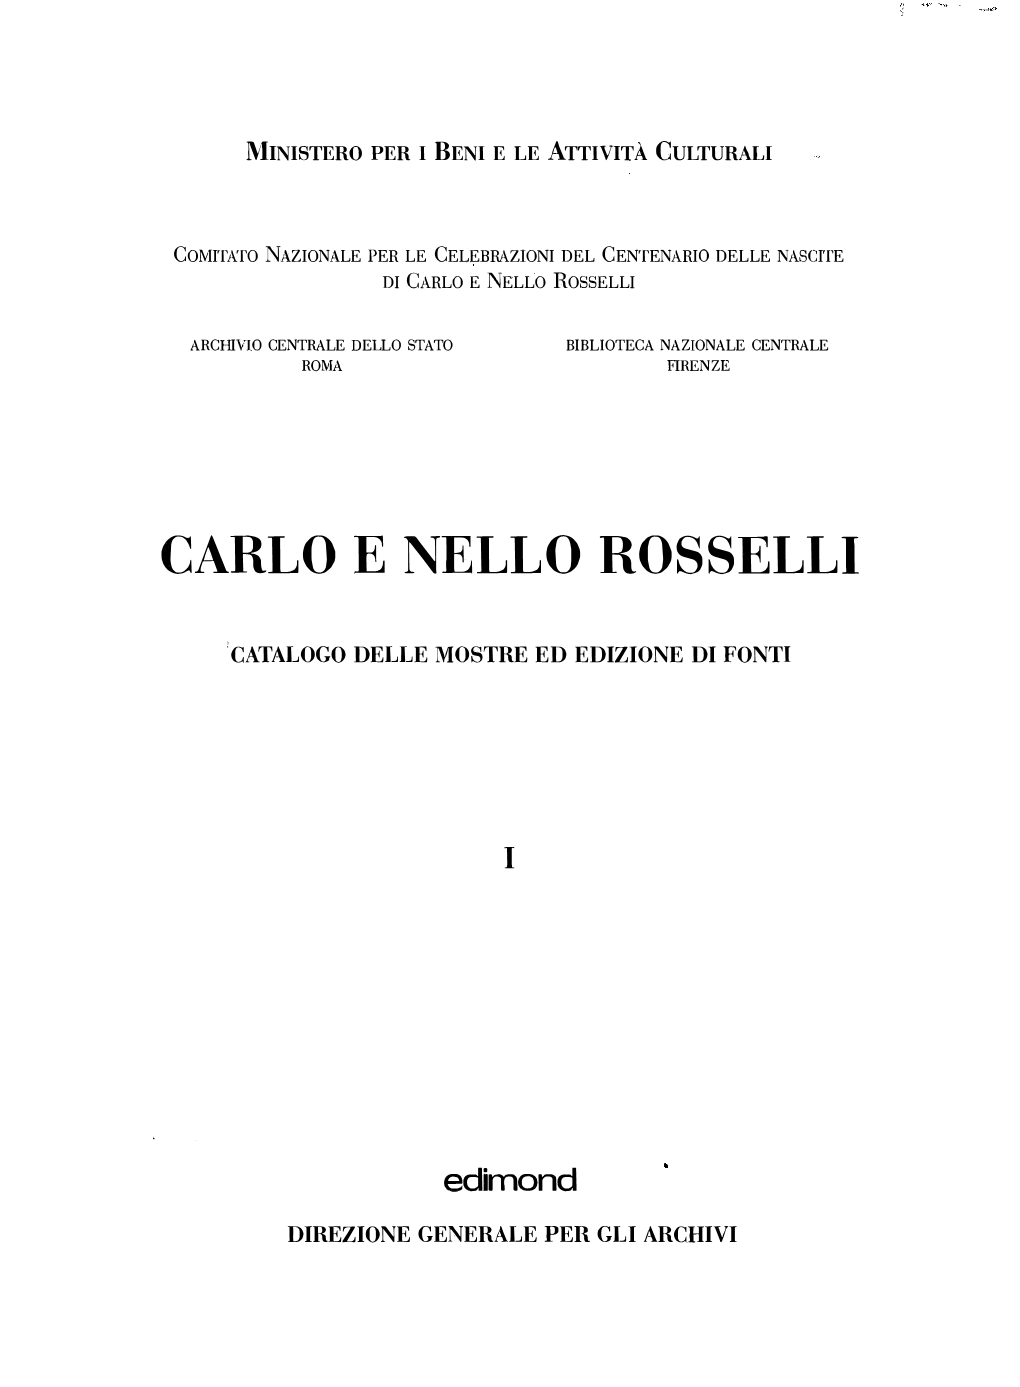 Carlo E Nello Rosselli. Catalogo Delle Mostre Ed Edizione Di Fonti